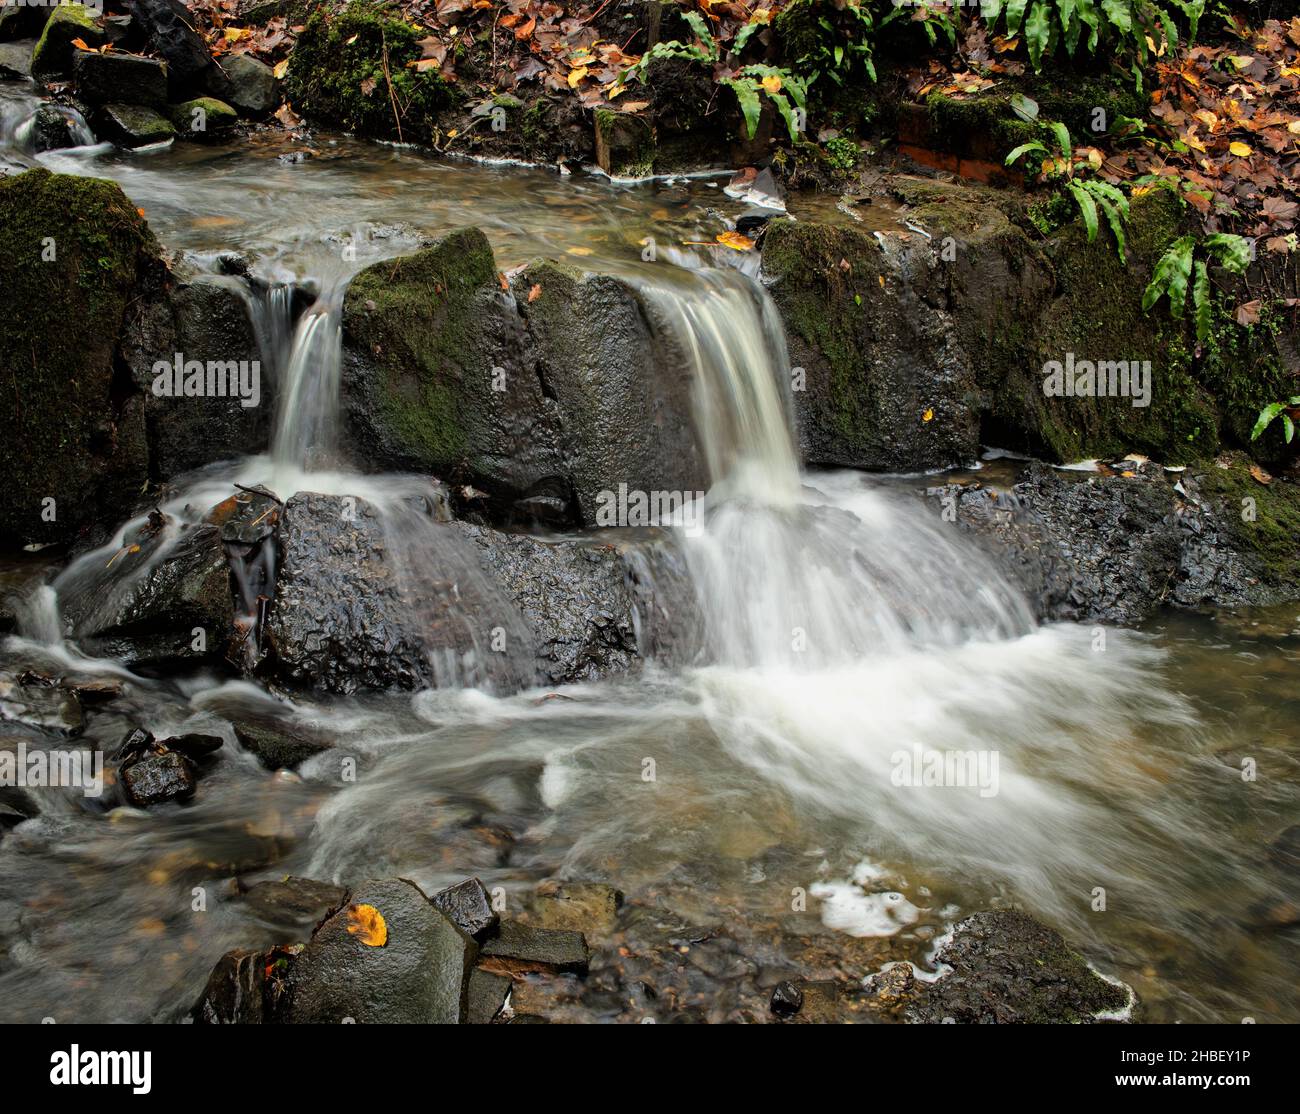 Una cascada gemela en un pequeño arroyo rodeado de hojas caídas en otoño Foto de stock